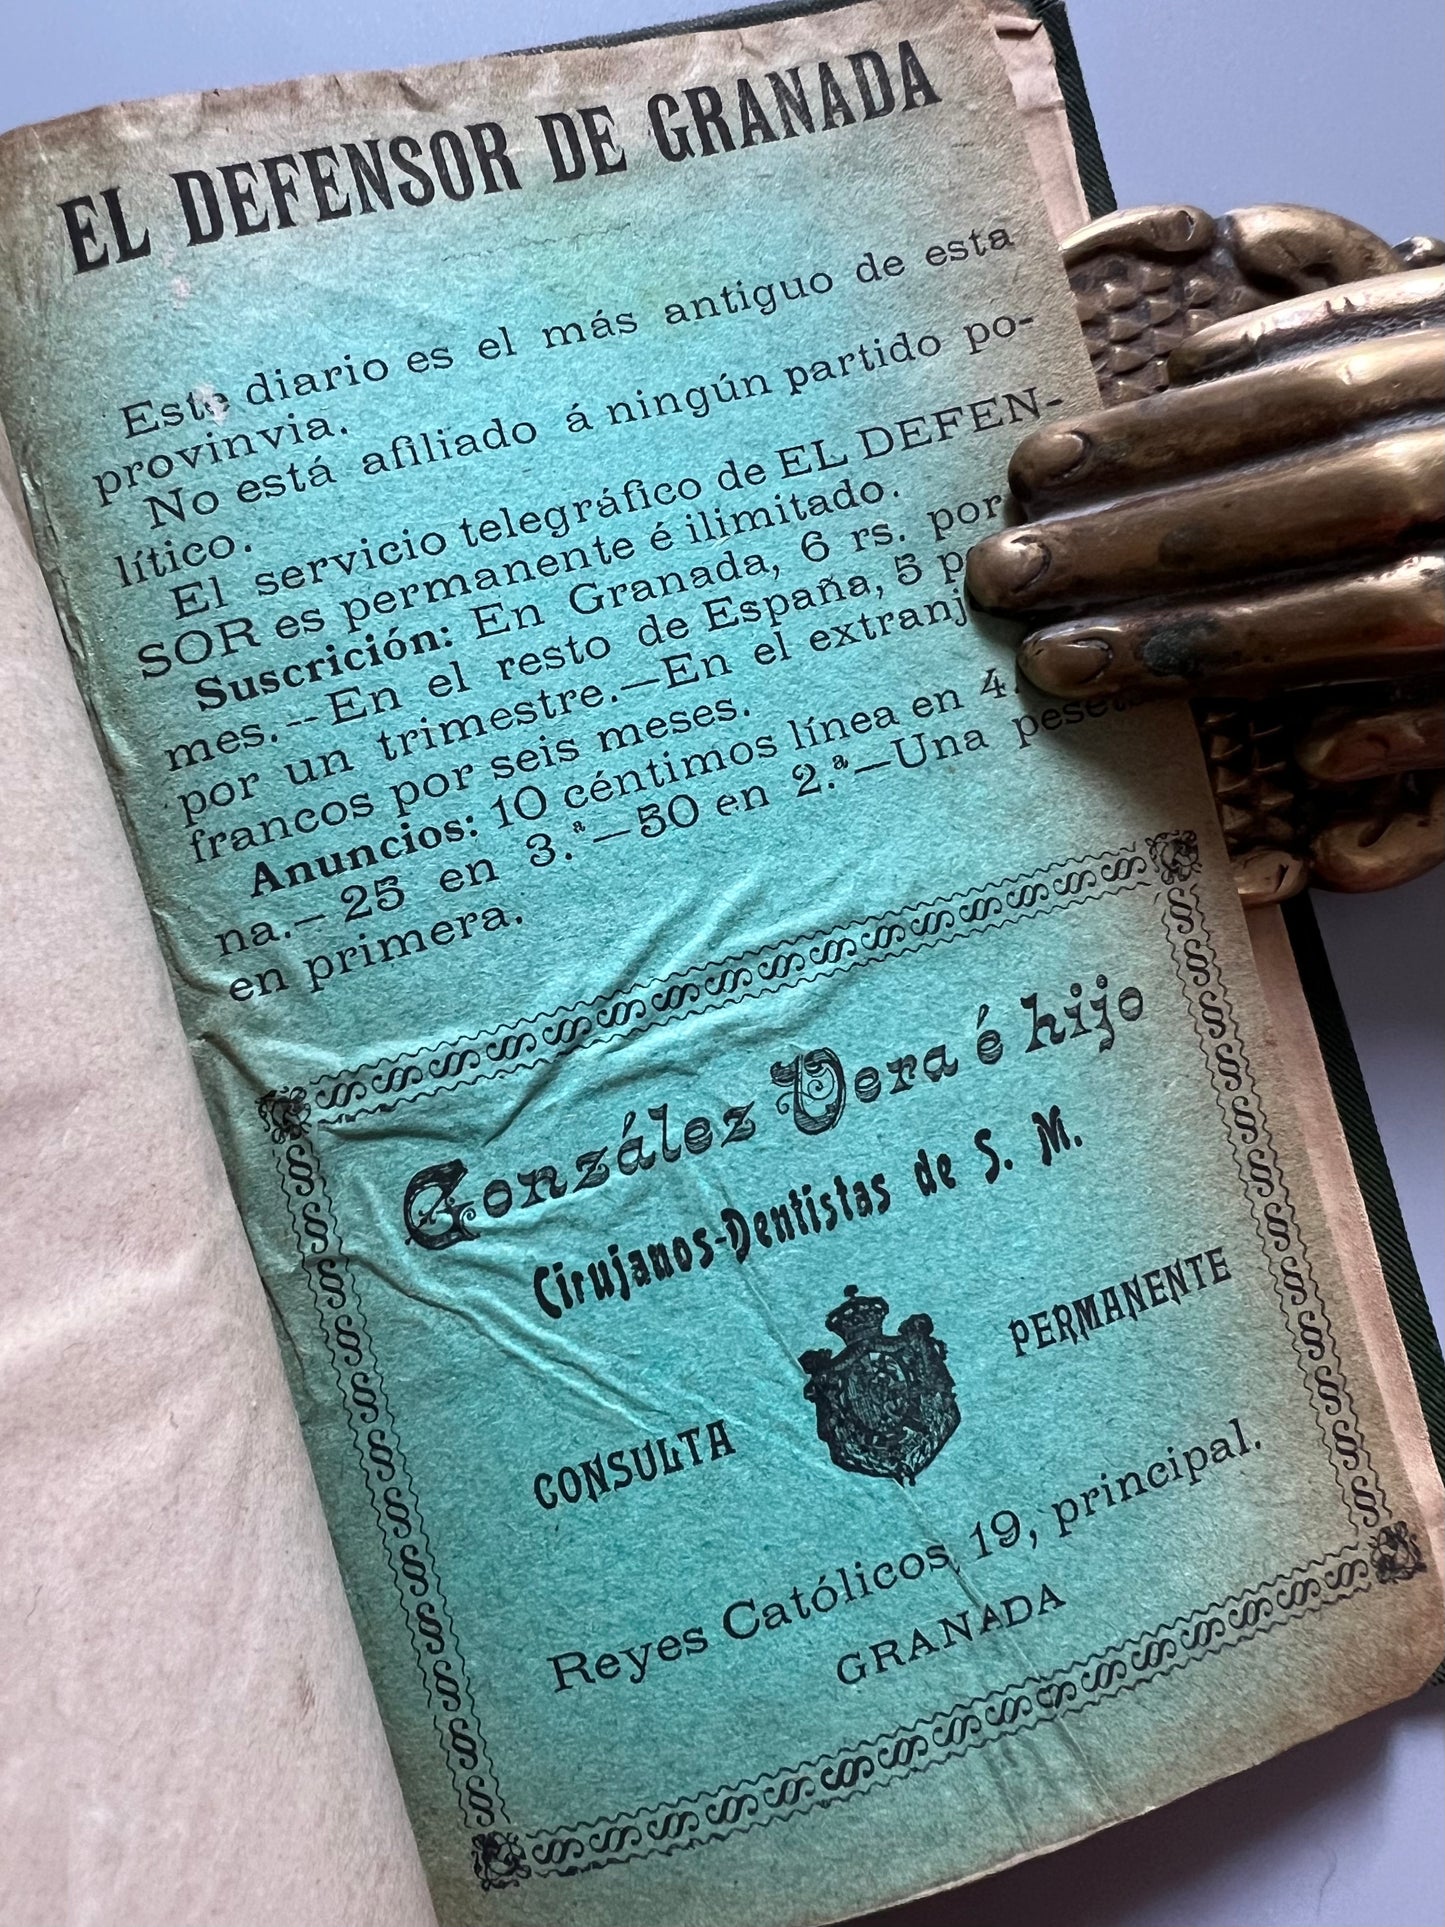 Guía práctica y artística de Granada, Luis Seco de Lucena - Imprenta de El Defensor de Granada, 1909